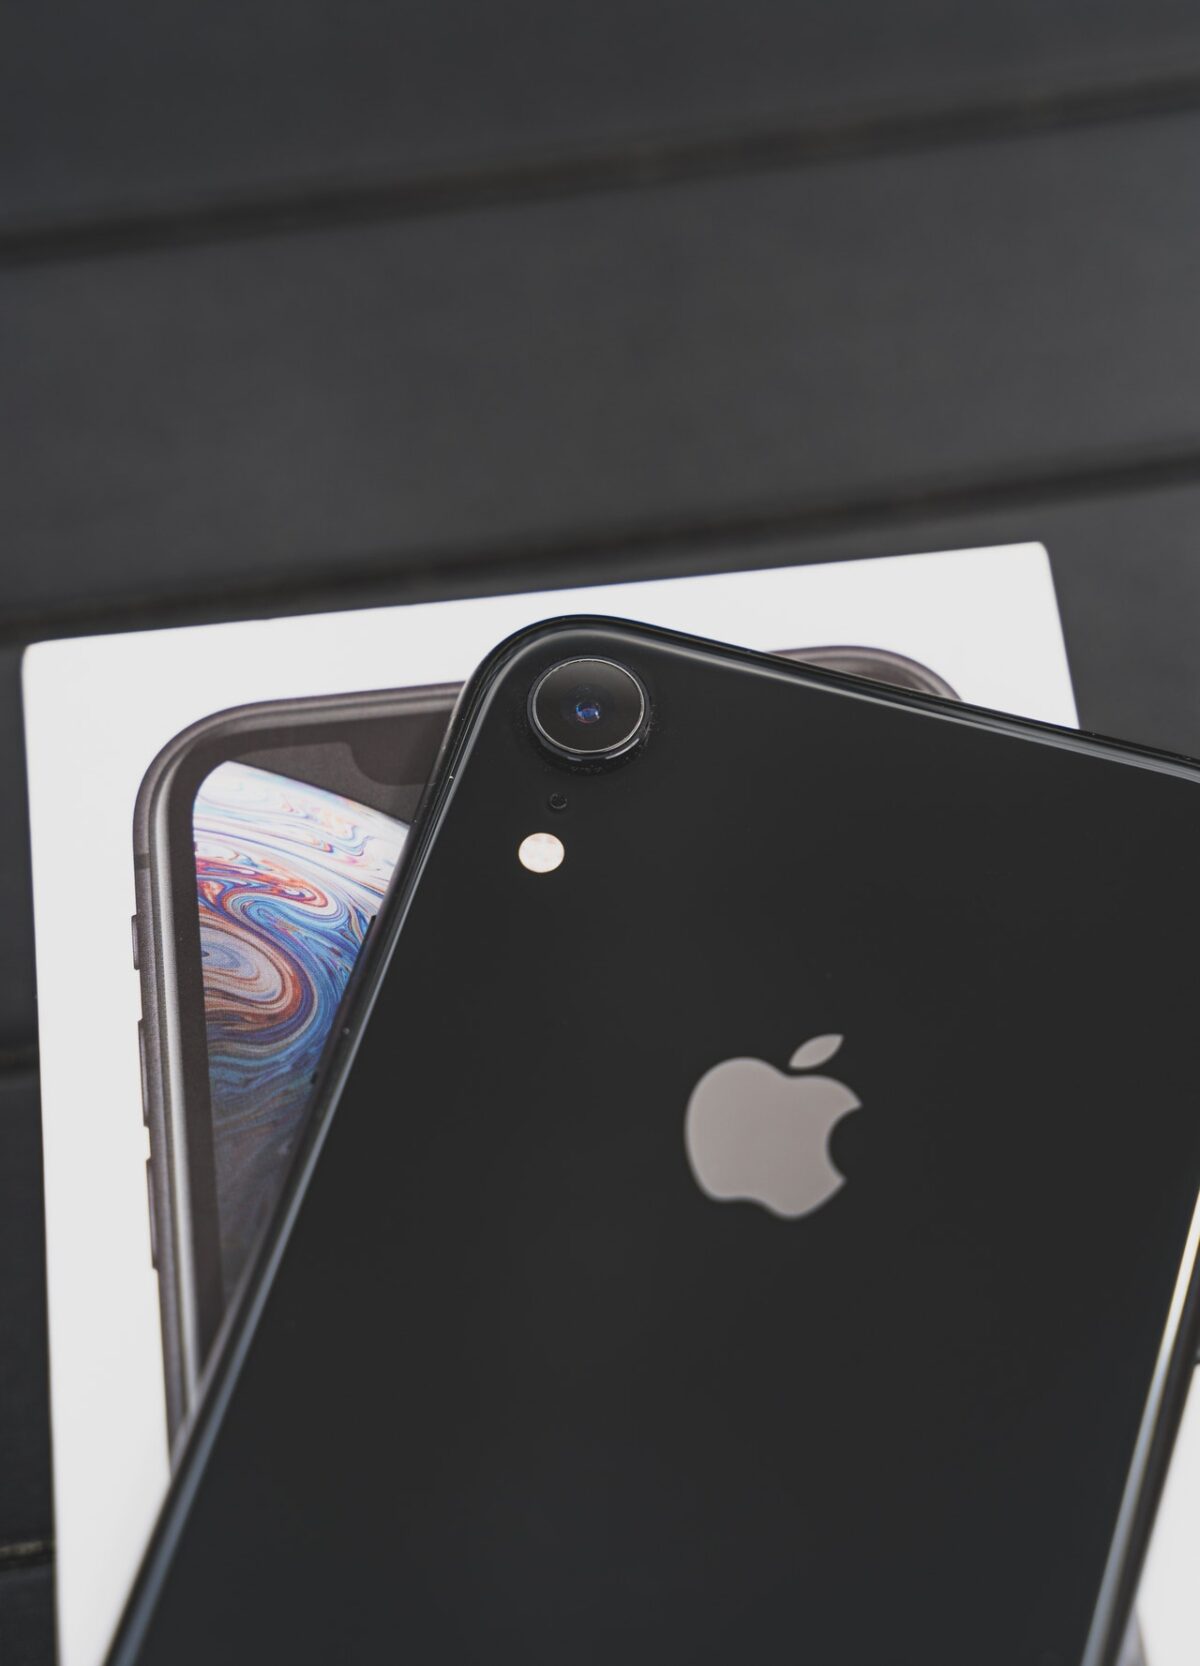 iPhone SE 2 pojawi się na początku 2020 roku?